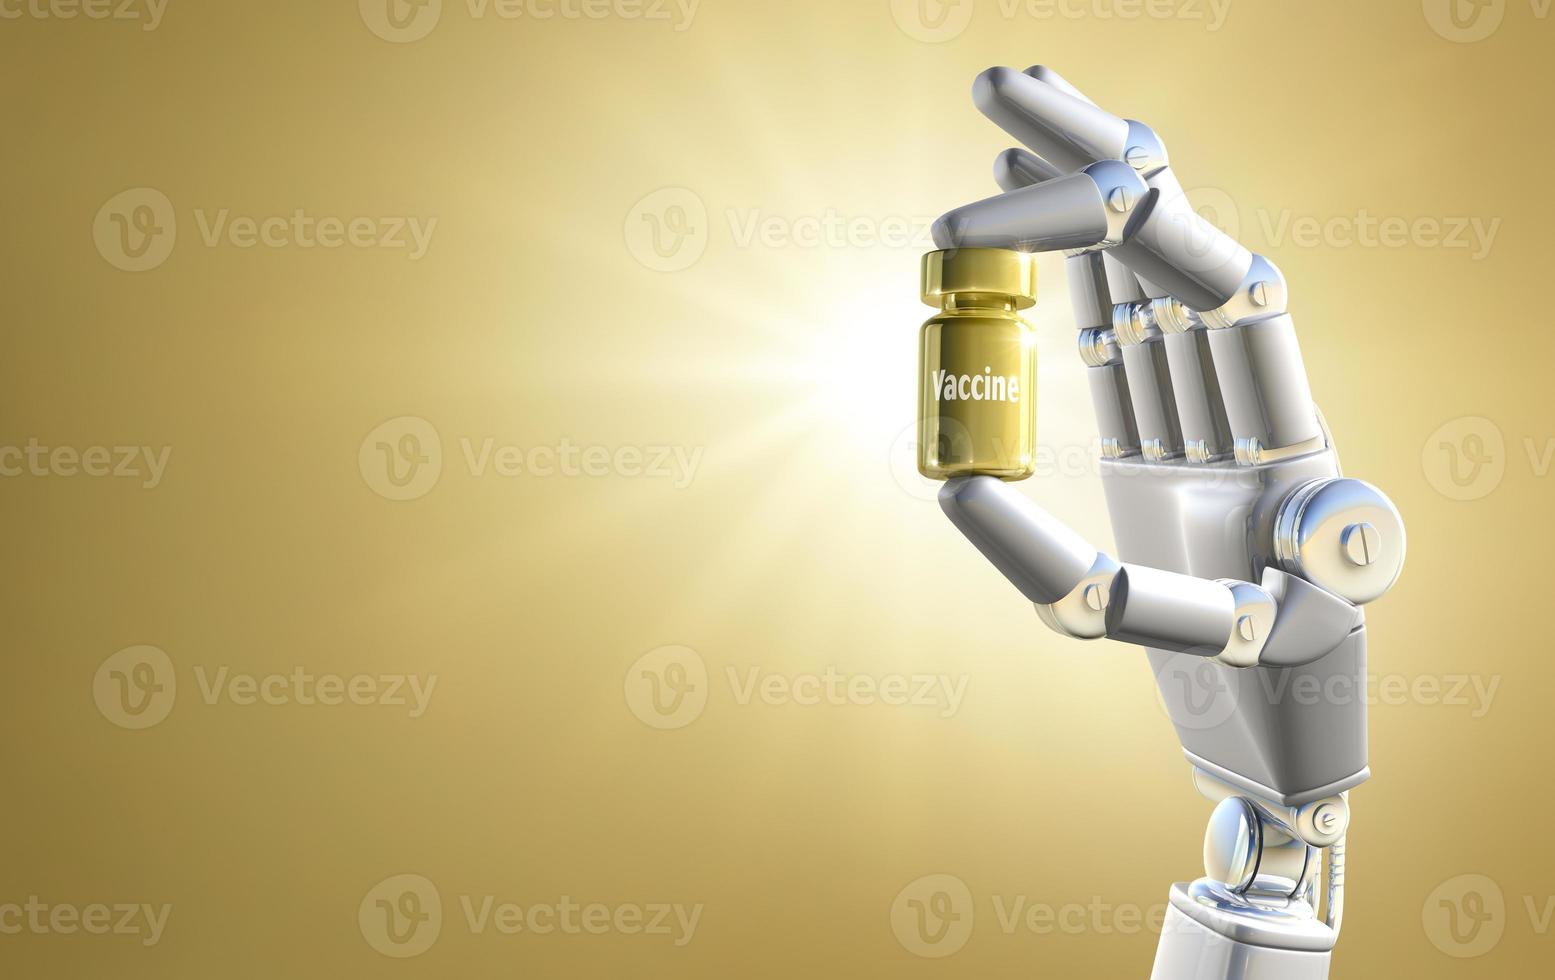 robothand som håller det gyllene vaccinet foto